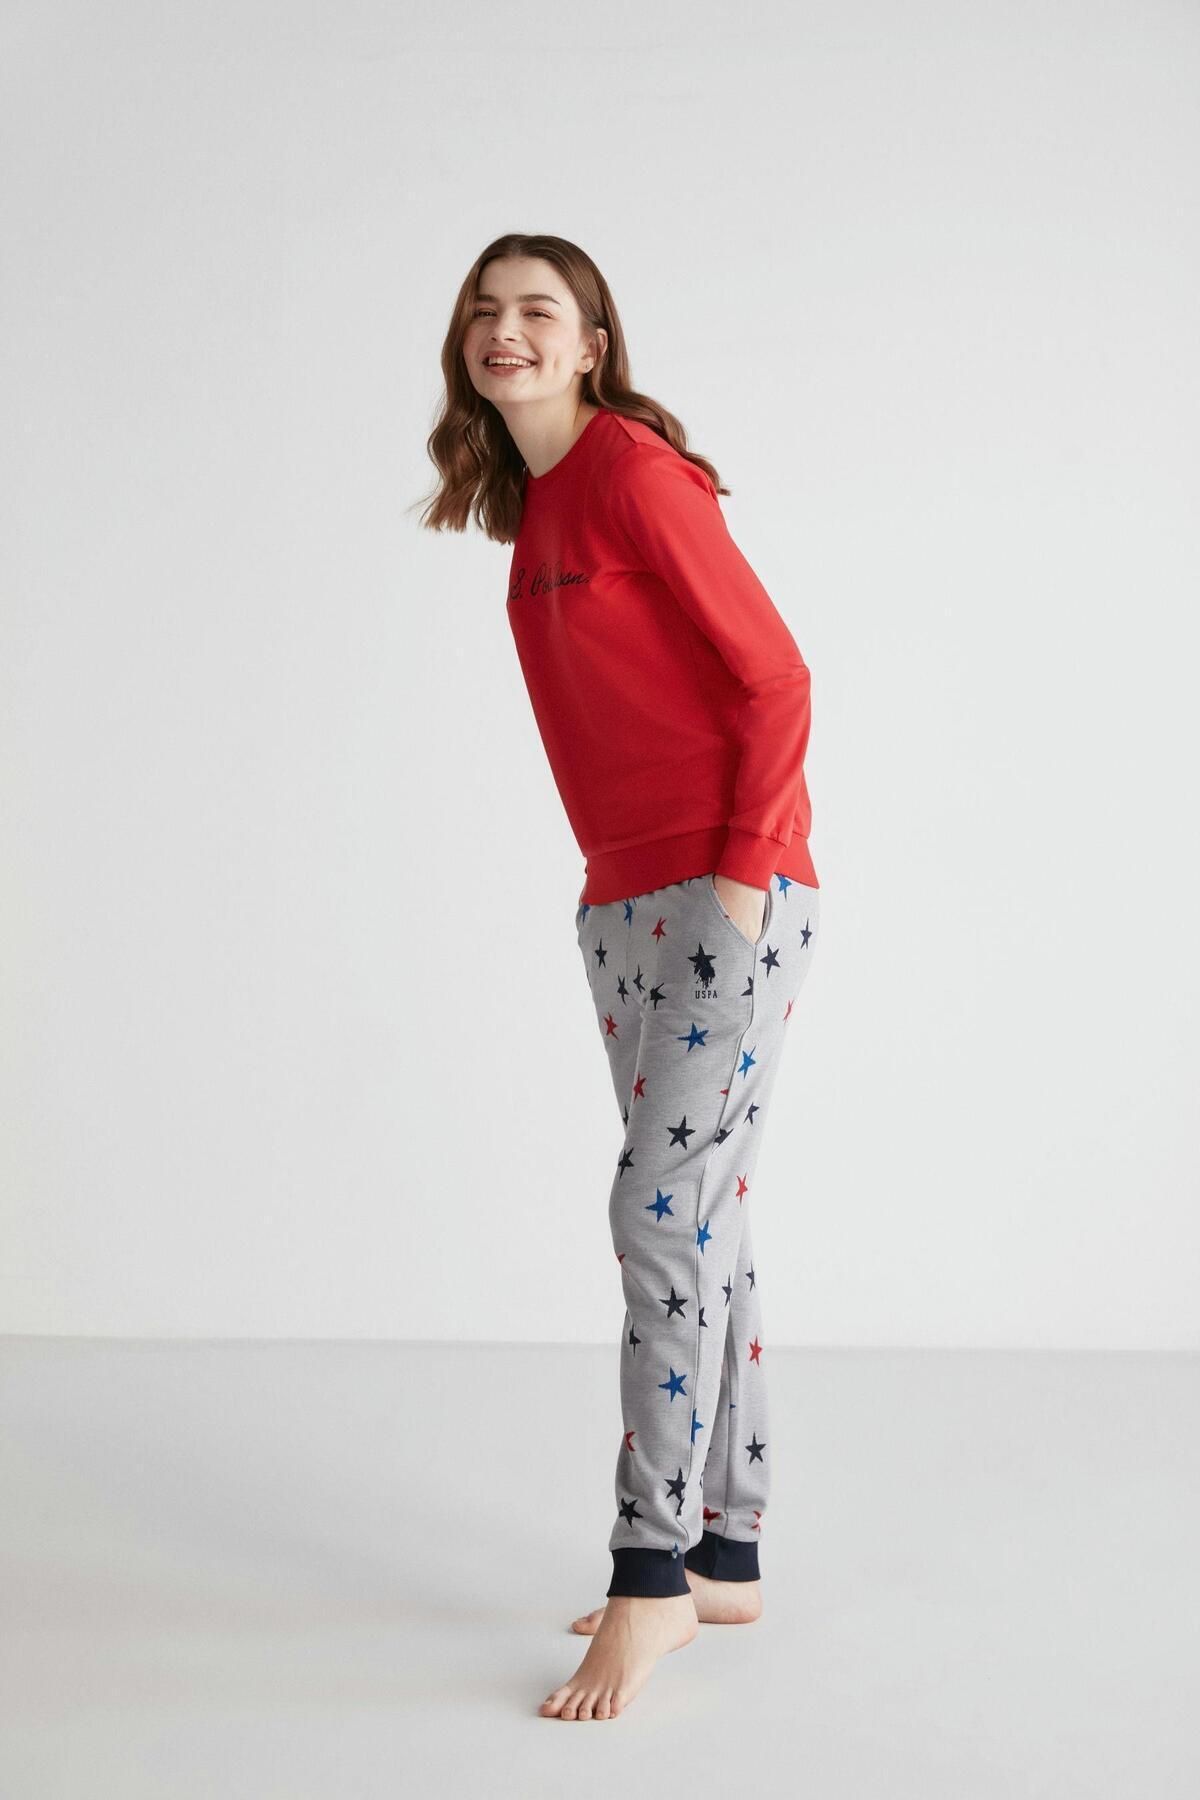 U.S. Polo Assn. Kadın Pamuklu Yıldız Desenli Kırmızı & Gri Dar Paça 2'li Pijama Takımı